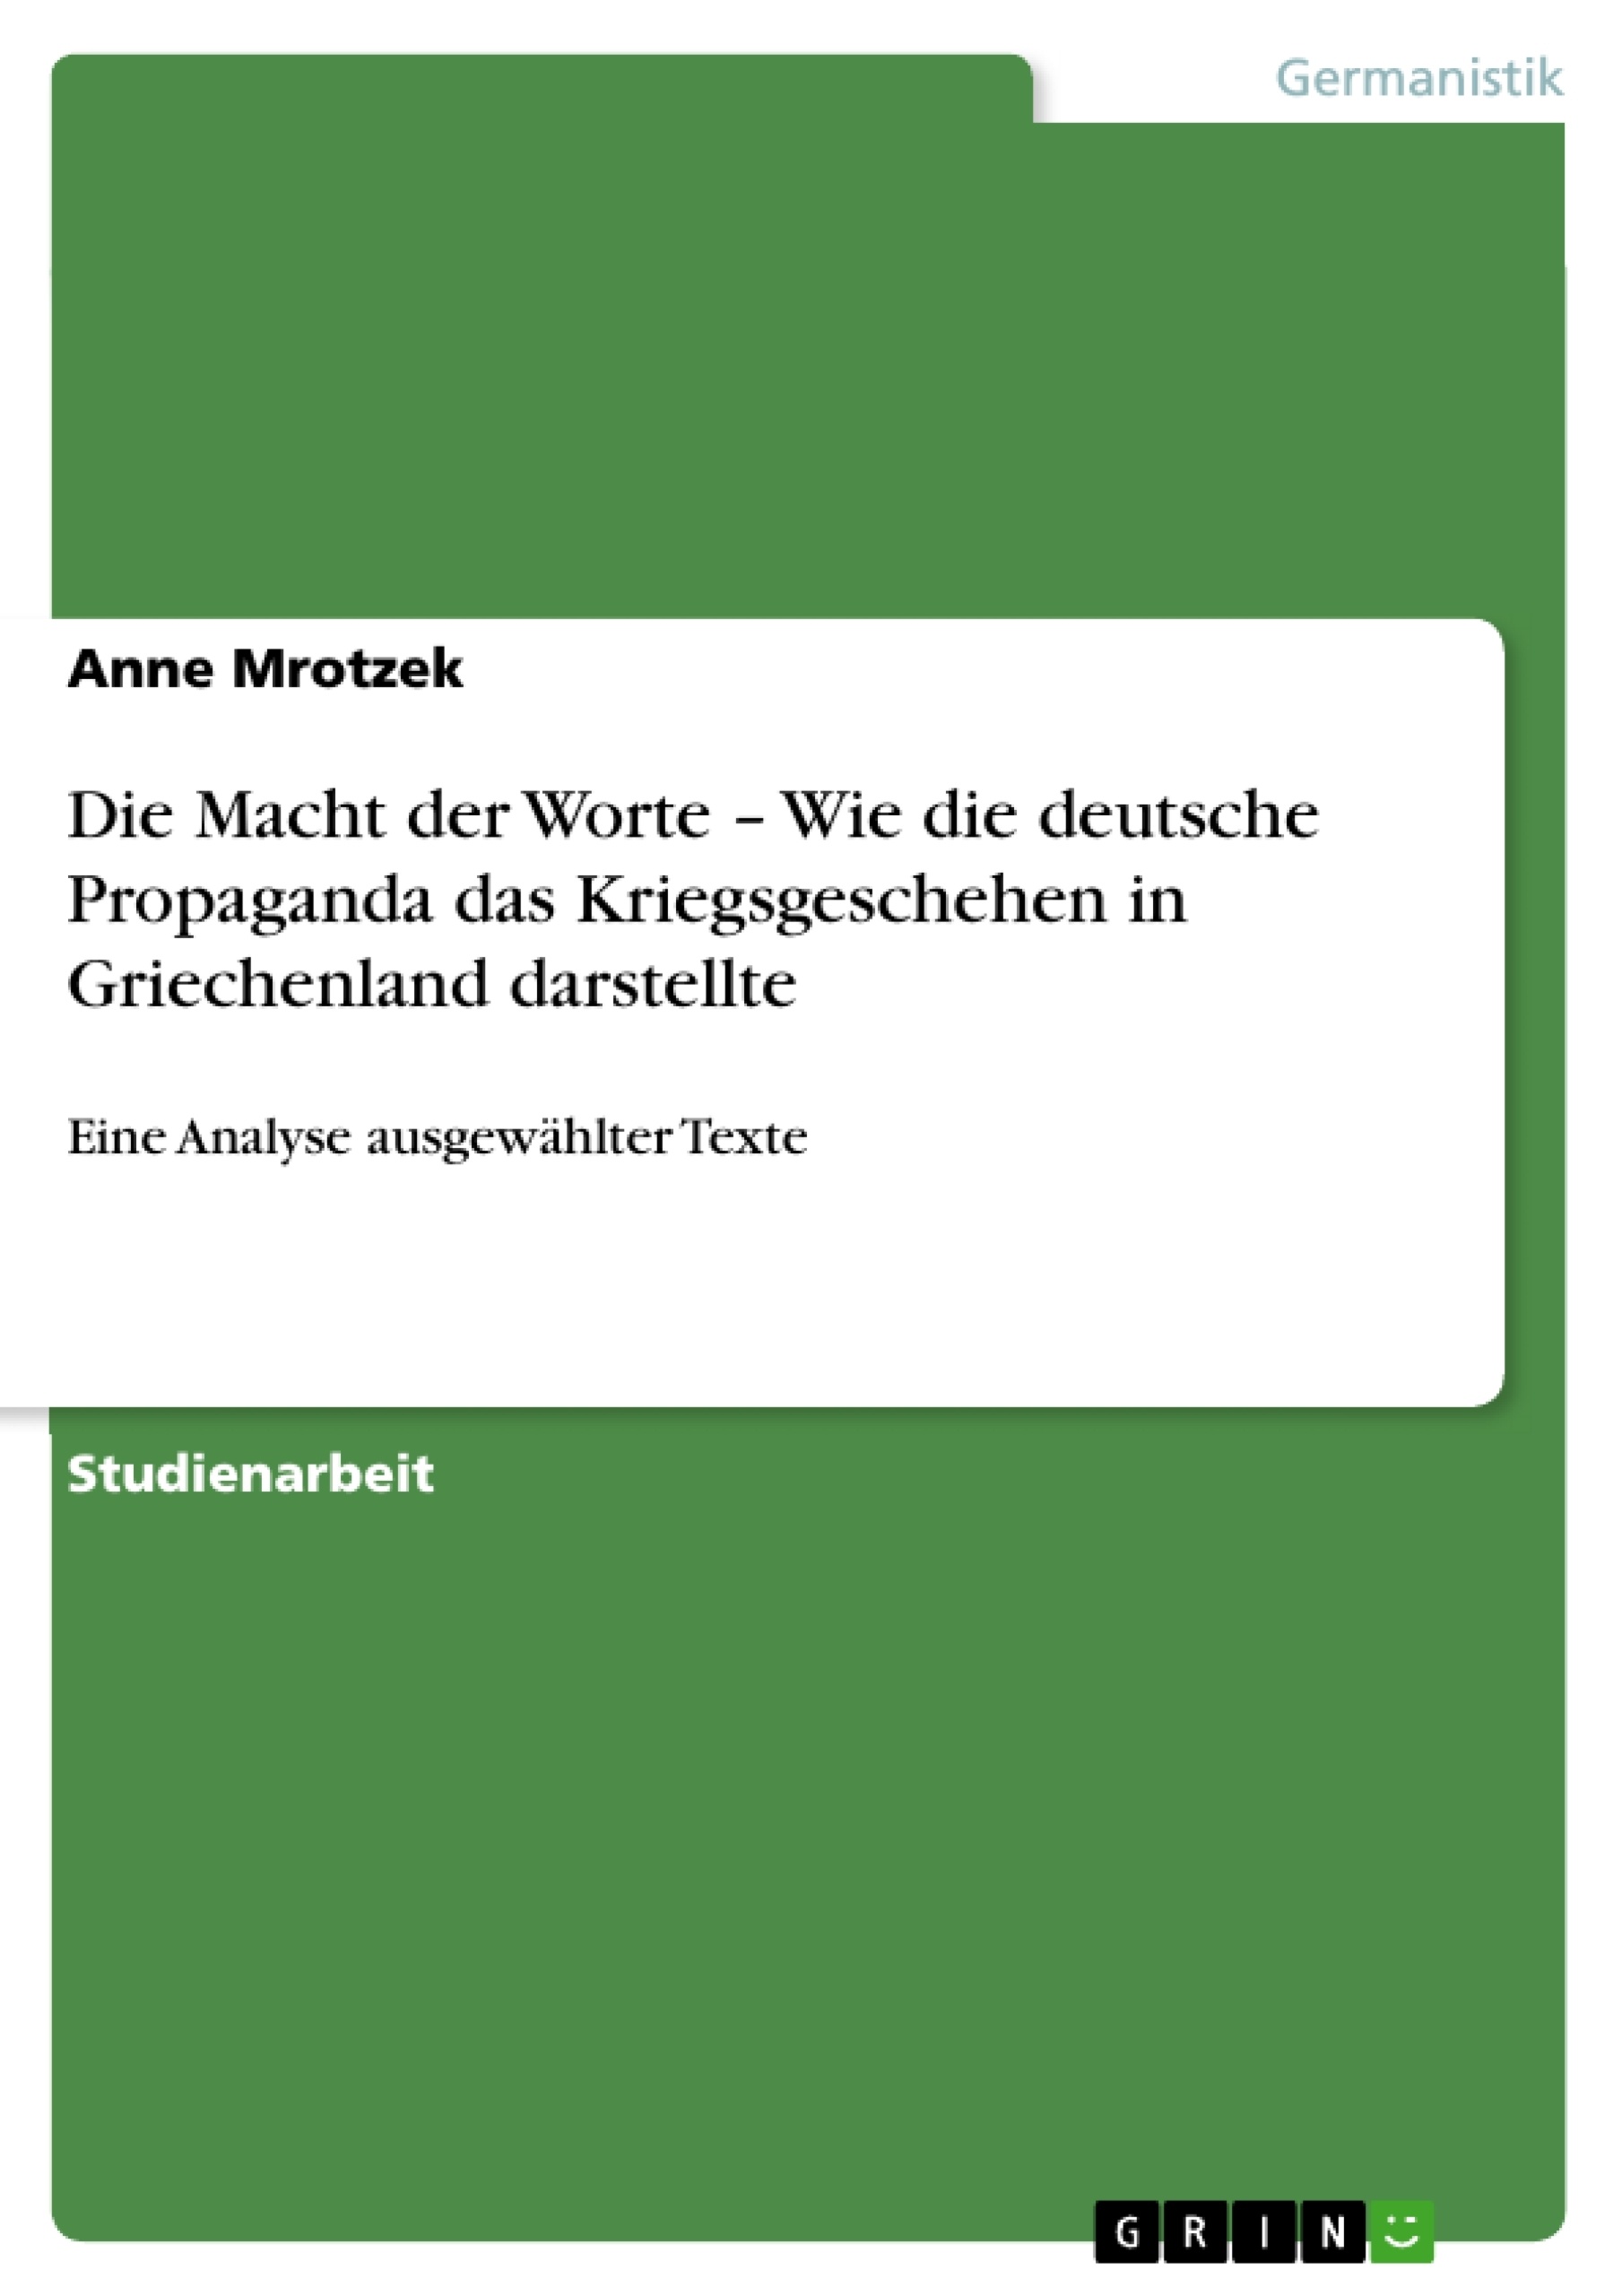 Título: Die Macht der Worte – Wie die deutsche Propaganda das Kriegsgeschehen in Griechenland darstellte